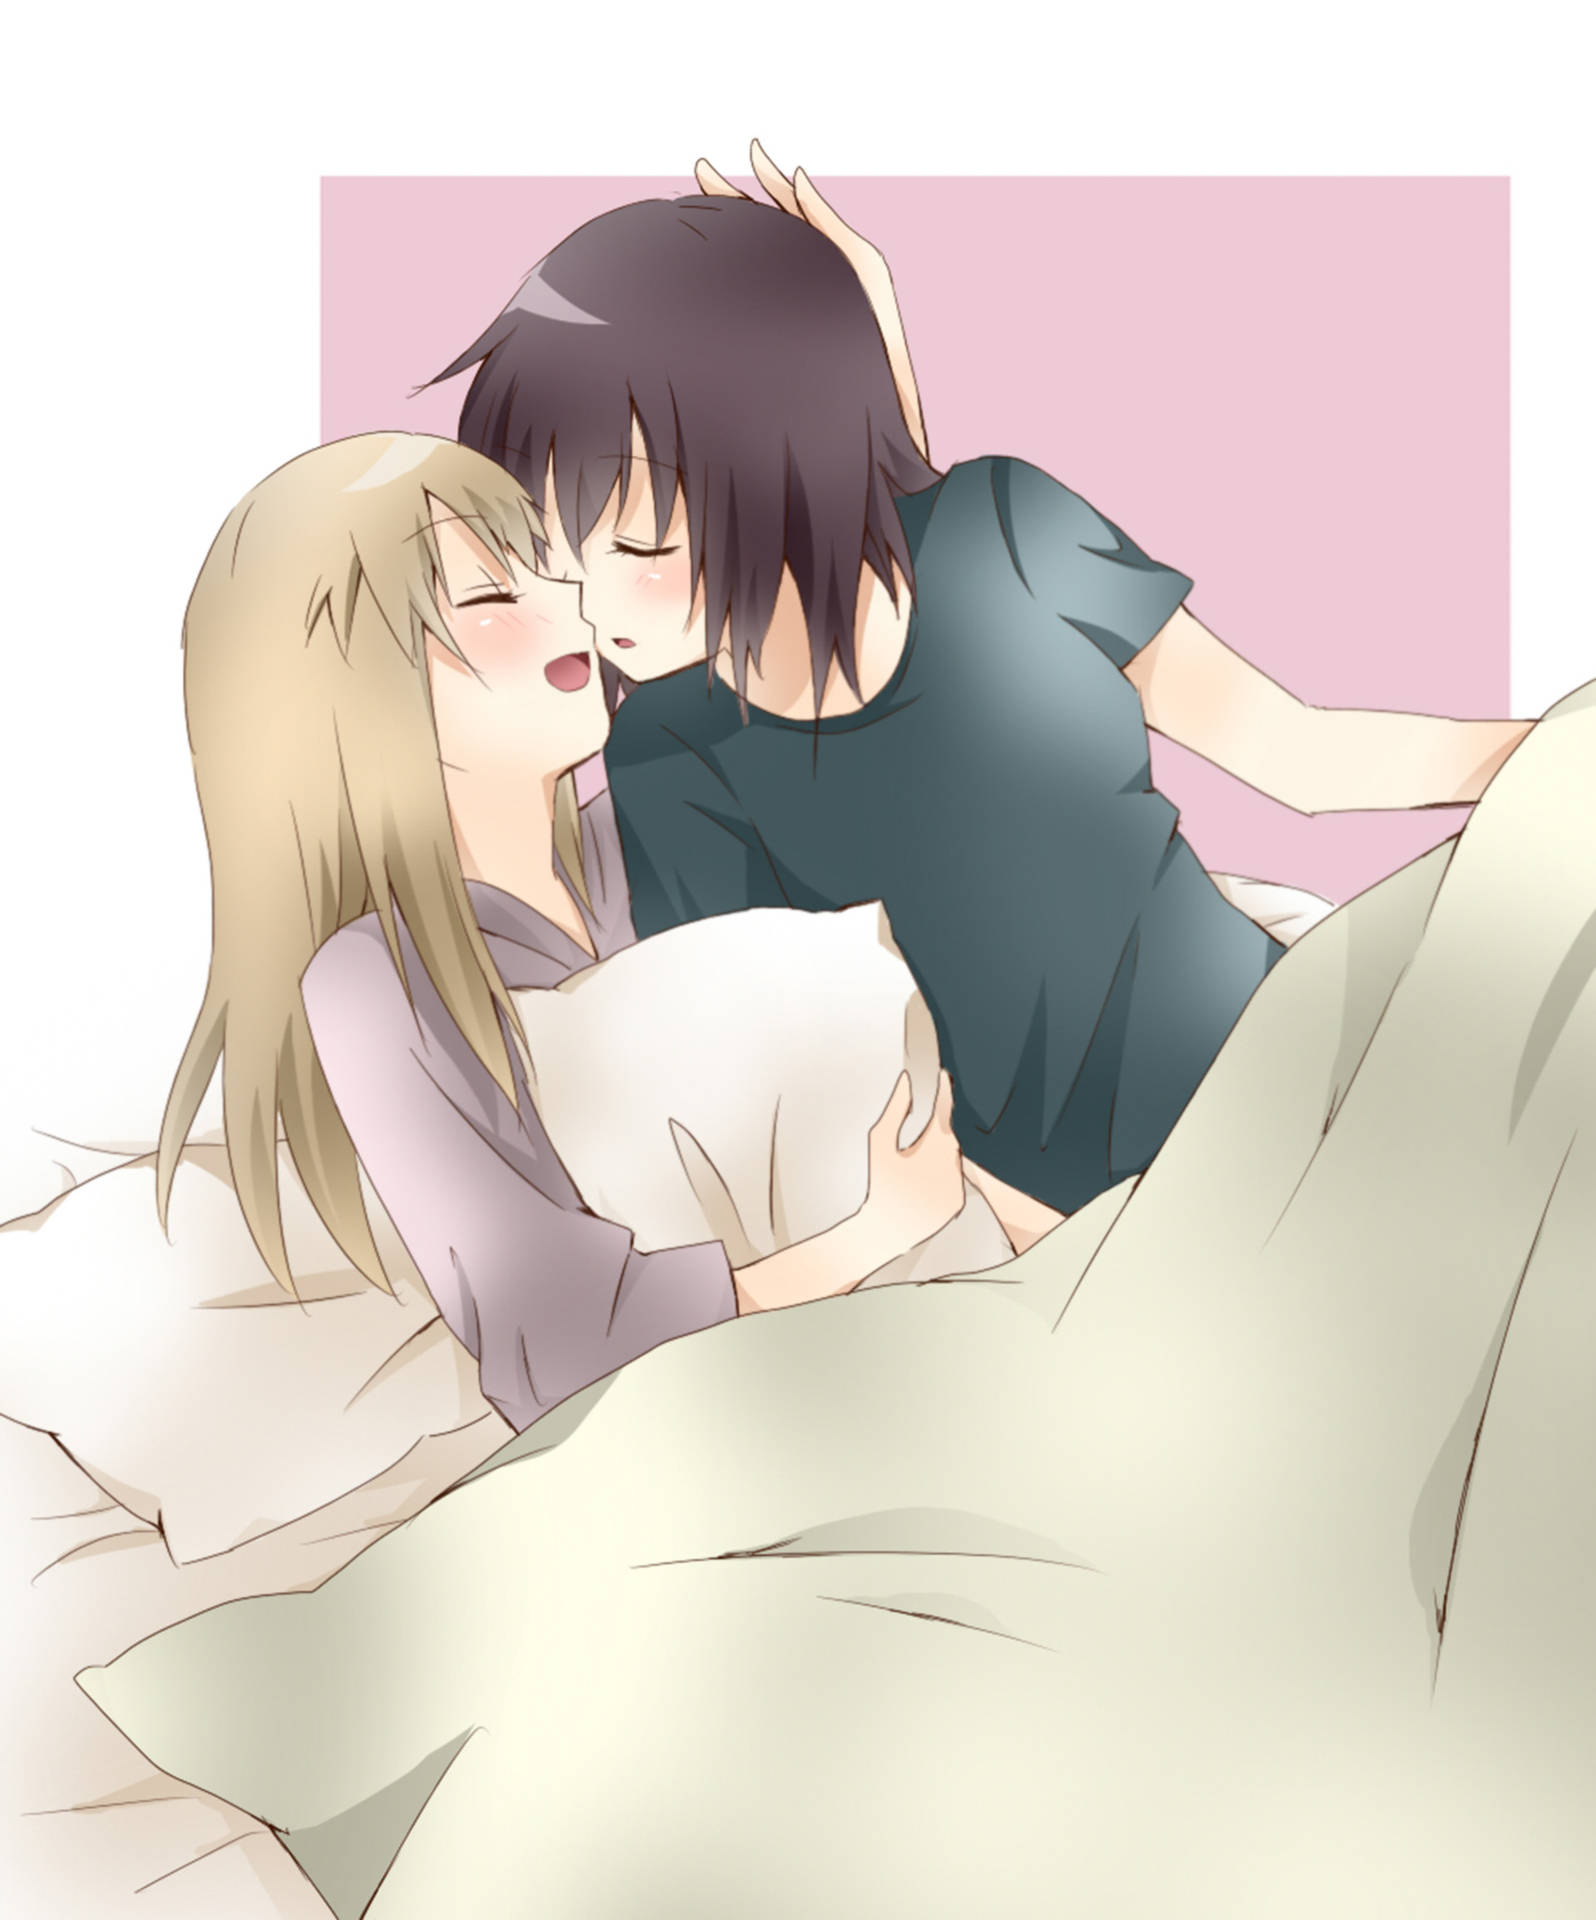 Cuddling Anime Lesbian